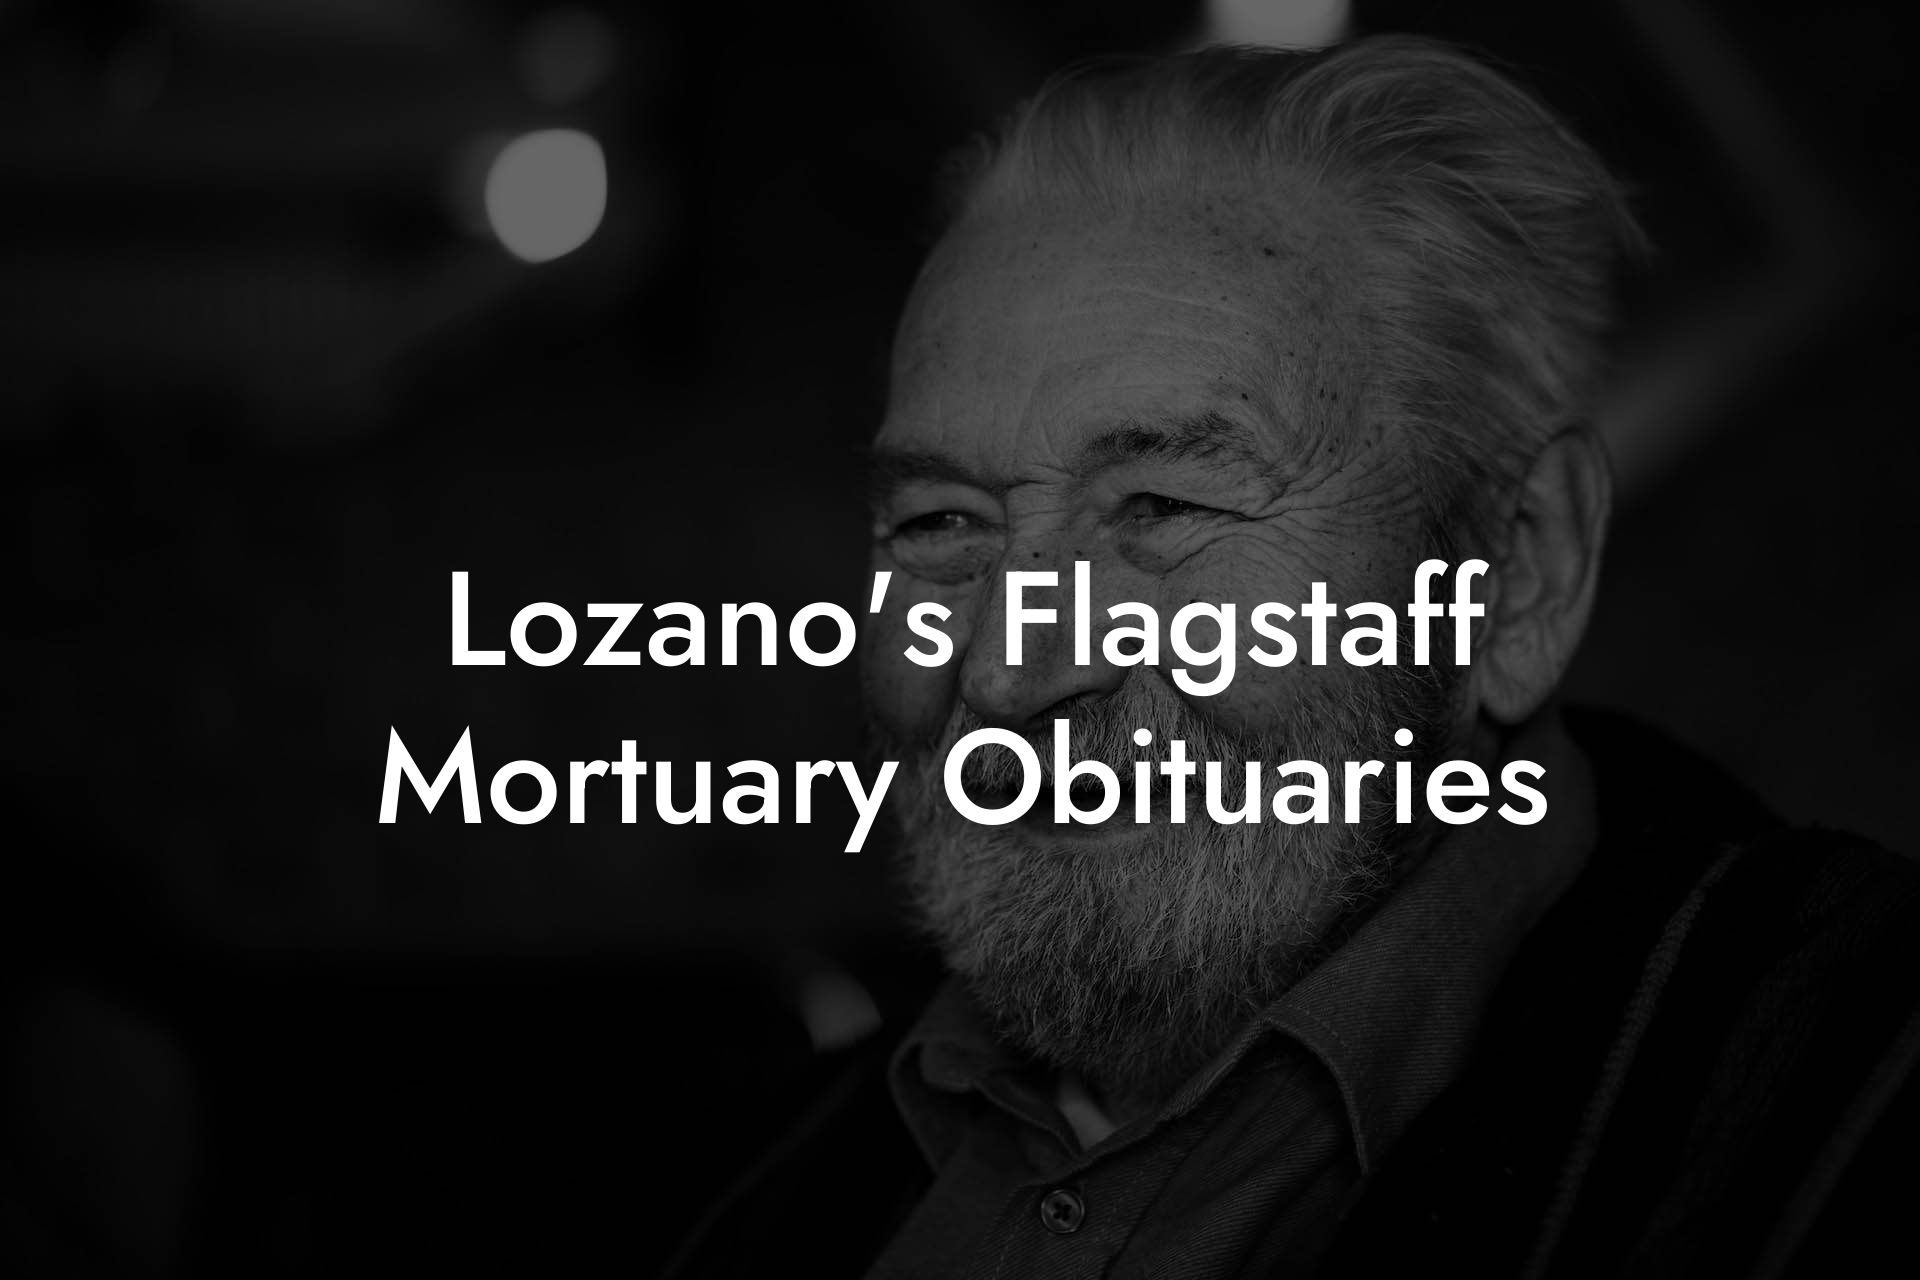 Lozano's Flagstaff Mortuary Obituaries